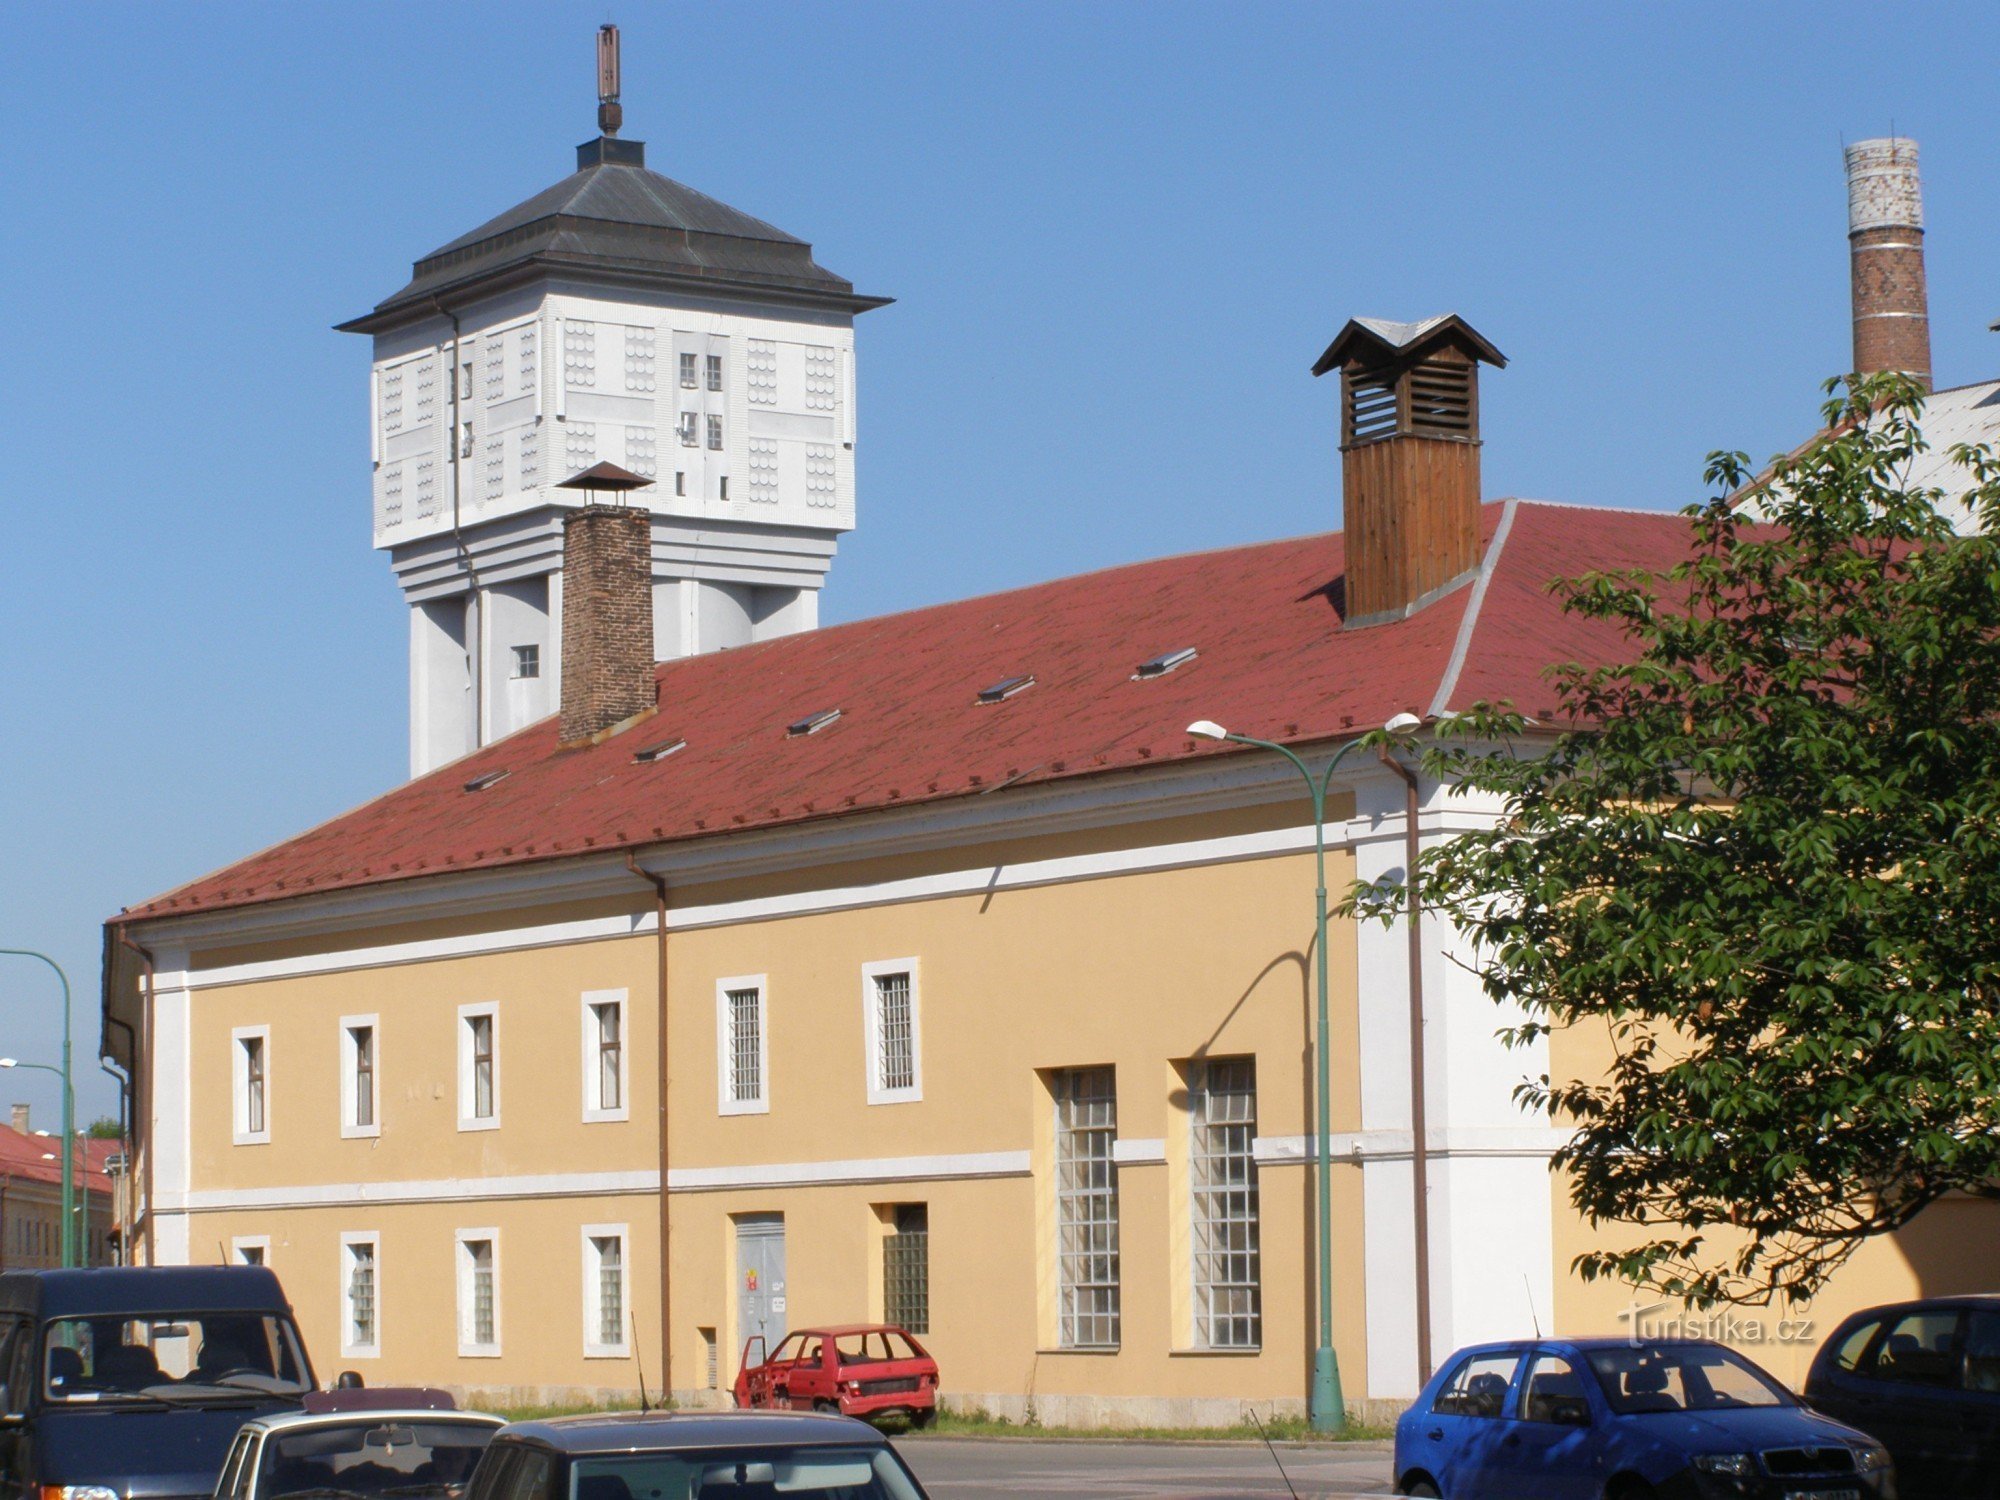 Josefov - torre dell'acqua e fabbrica di birra